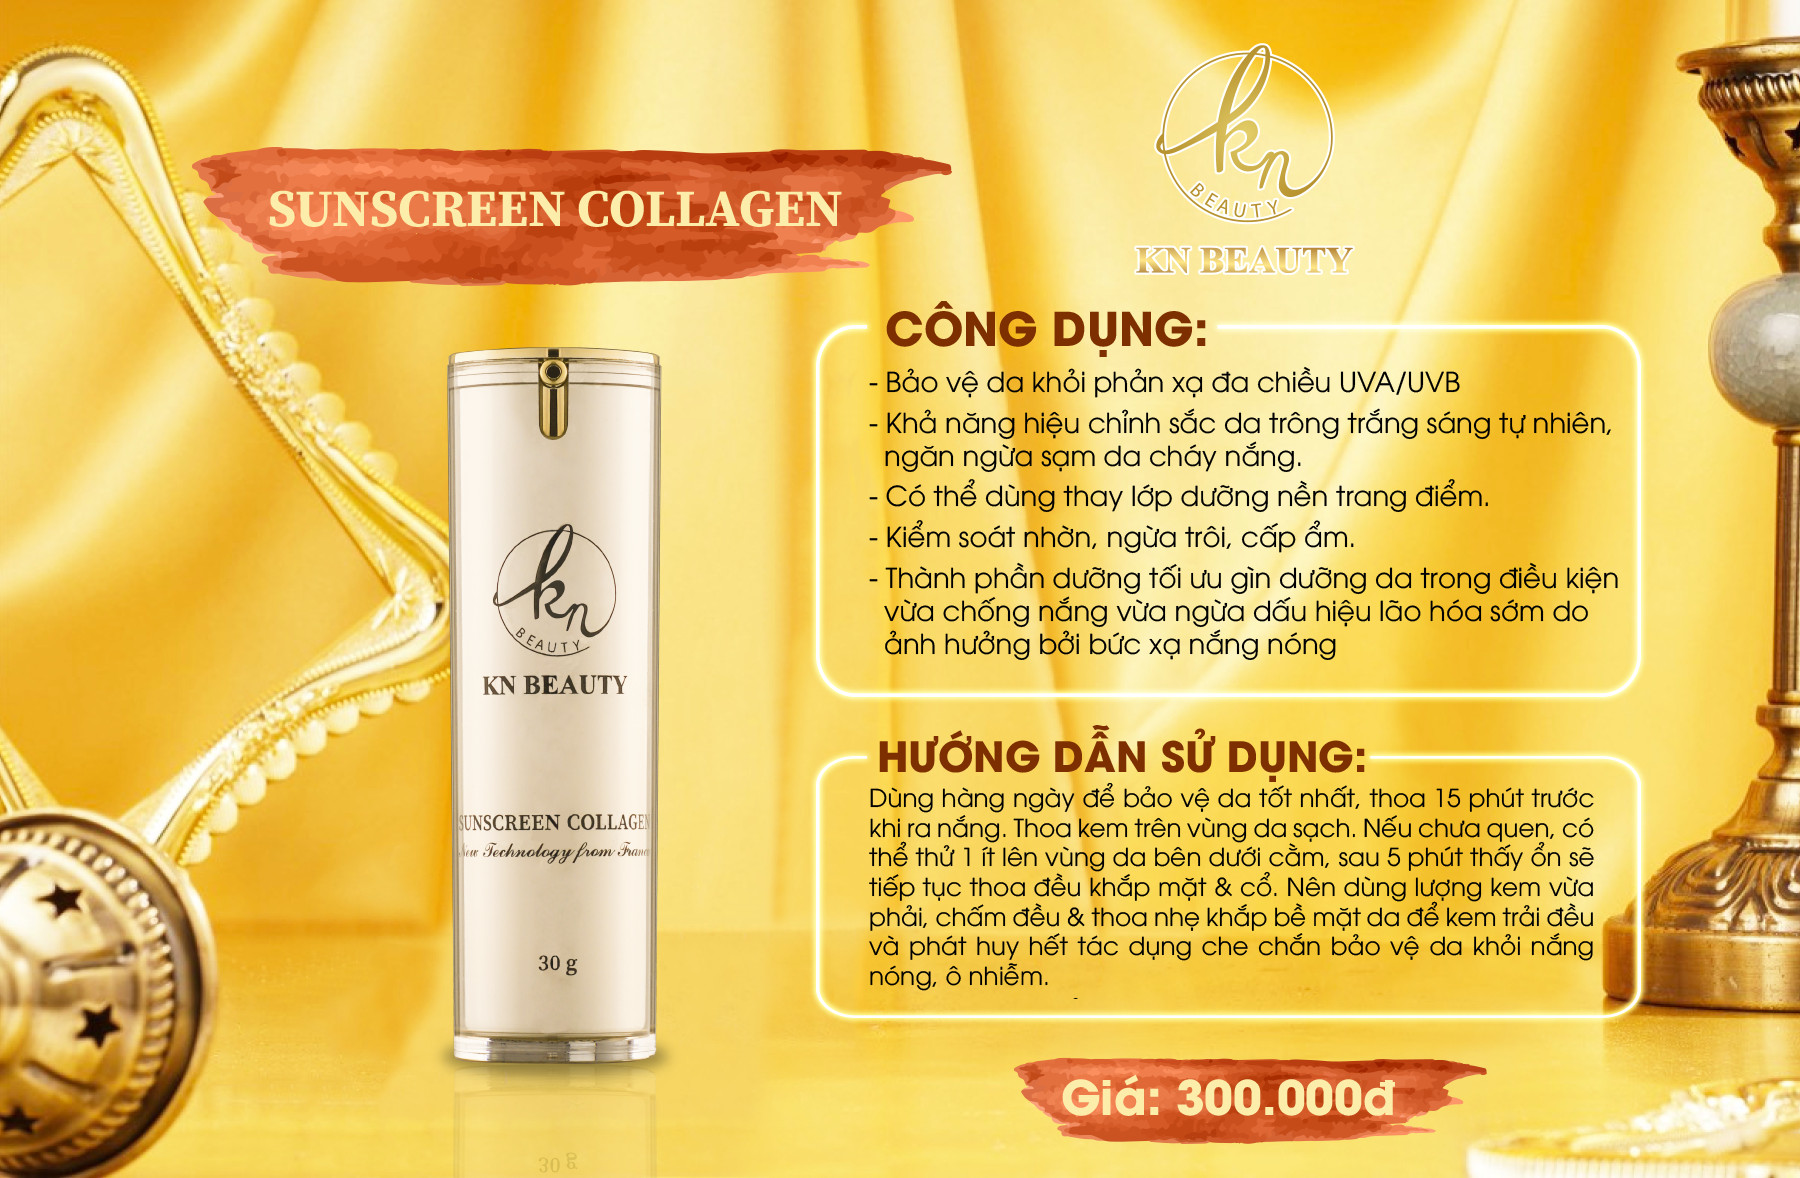 Kem Chống Nắng Make Up Dưỡng Da, Dưỡng Ẩm, Kháng Nước Sunscreen Collagen SPF 50+++ KN Beauty 30g